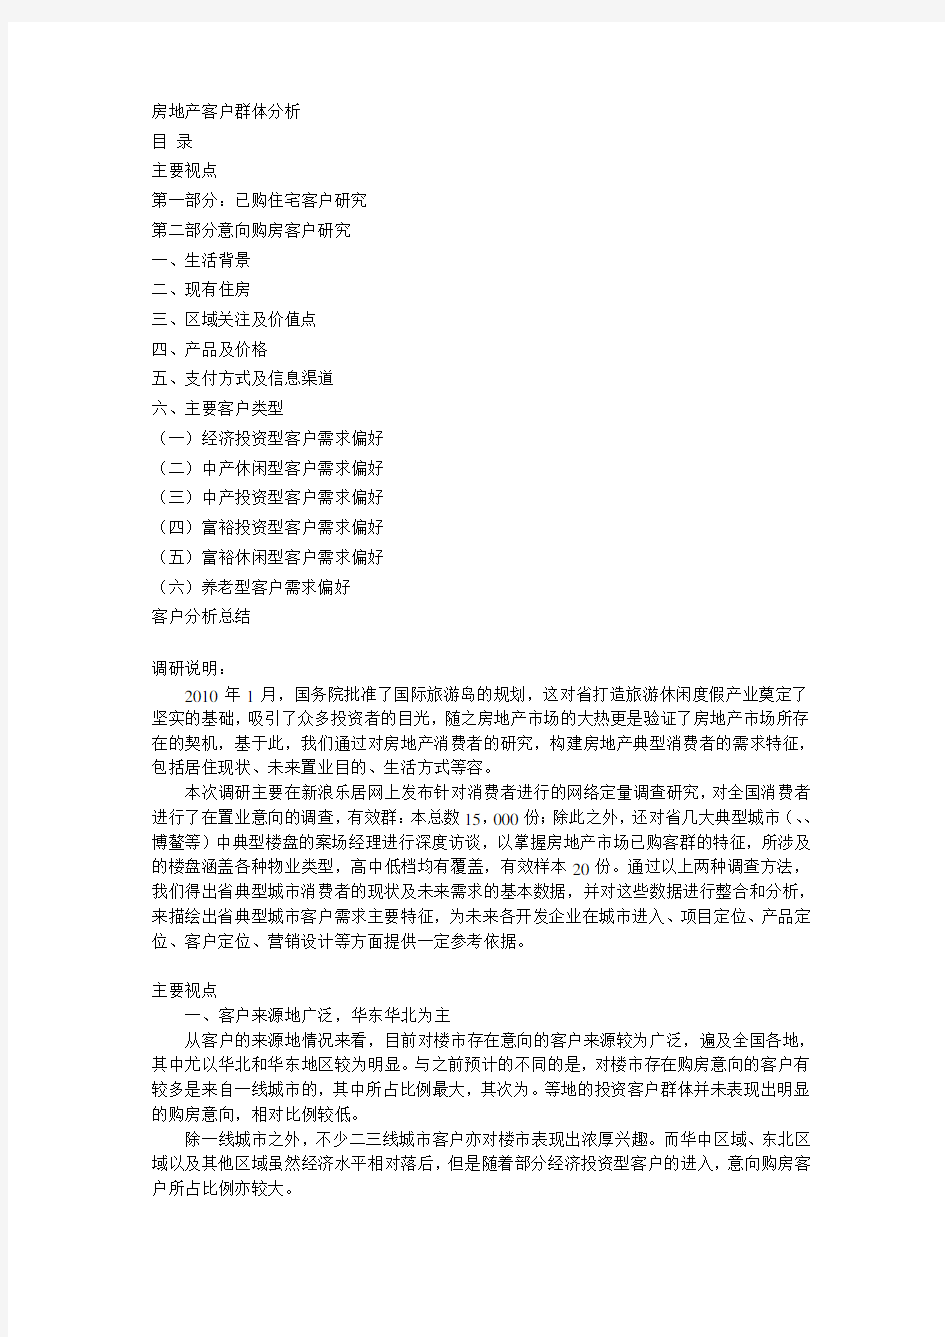 海南房地产客户群体分析-中文文字版